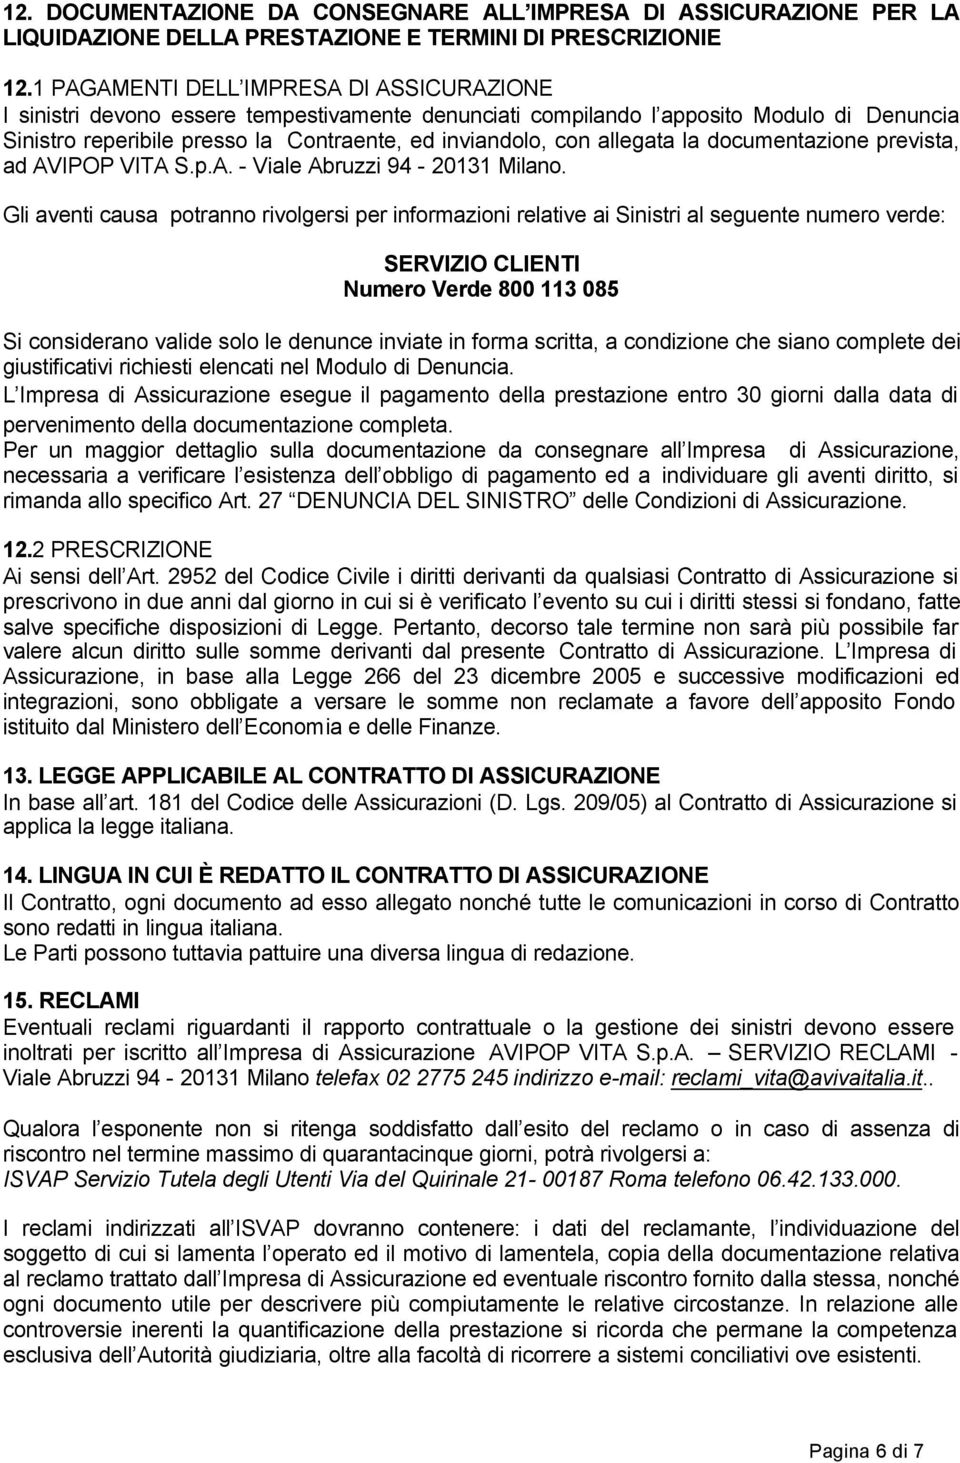 allegata la documentazione prevista, ad AVIPOP VITA S.p.A. - Viale Abruzzi 94-20131 Milano.